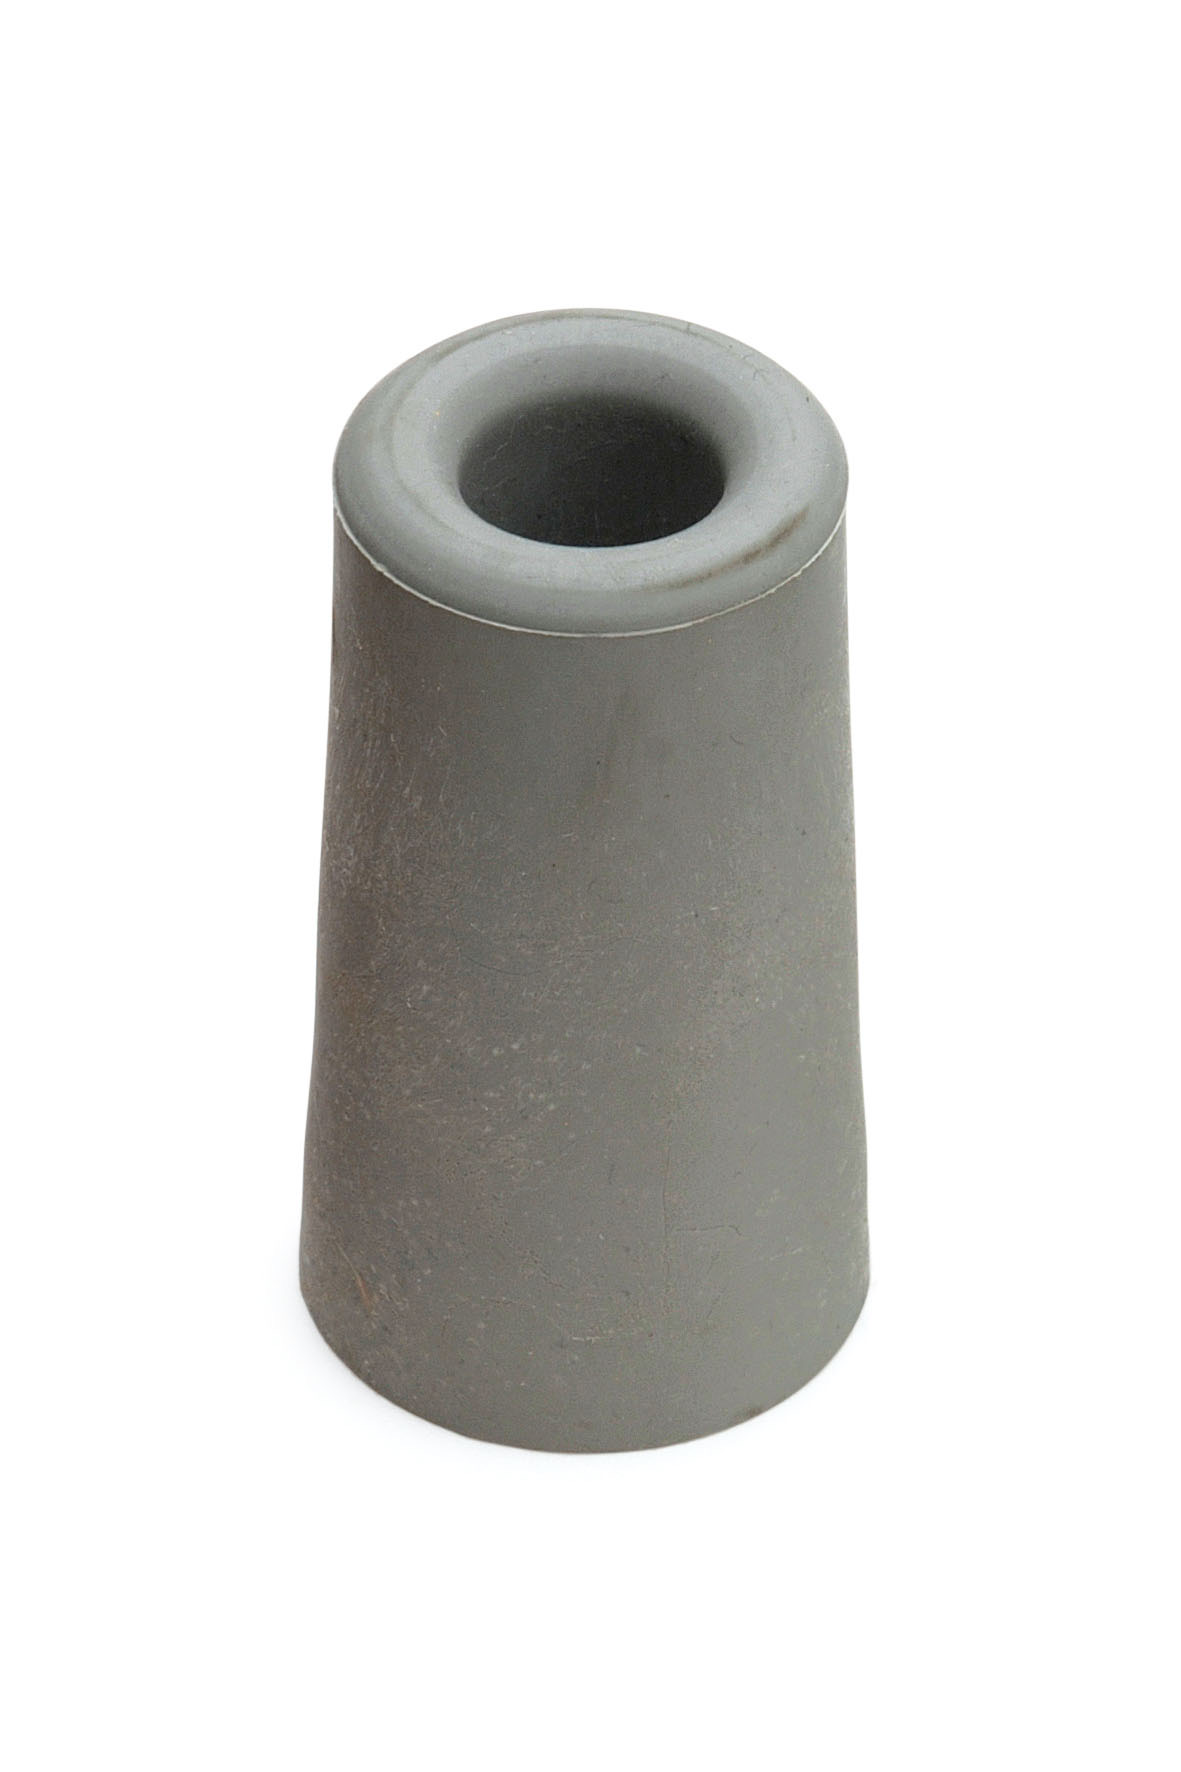 Deurstopper rubber grijs 37x48 mm.jpg